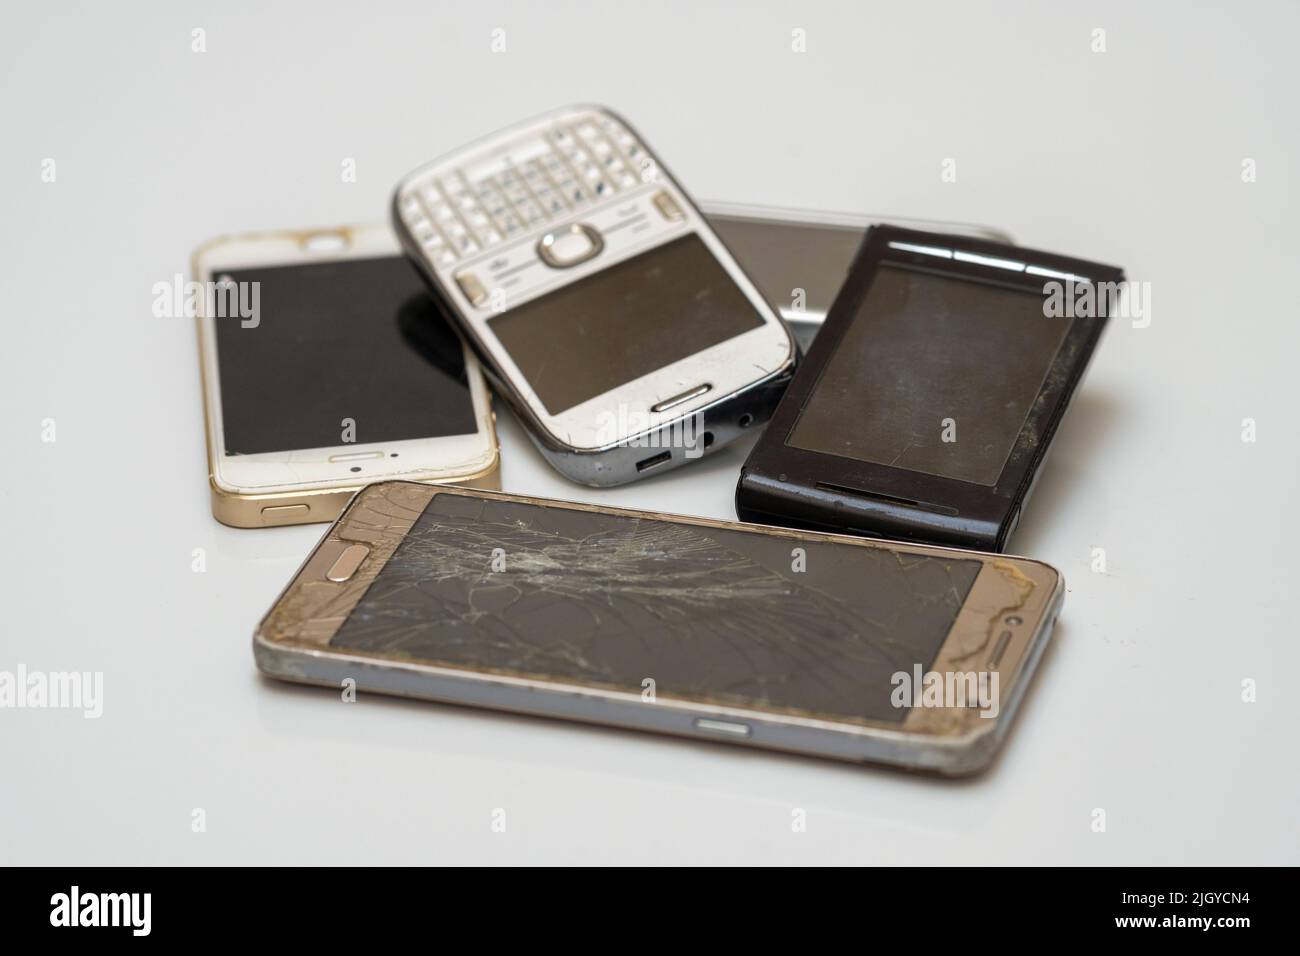 Un primer plano de los smartphones dañados desechados Foto de stock